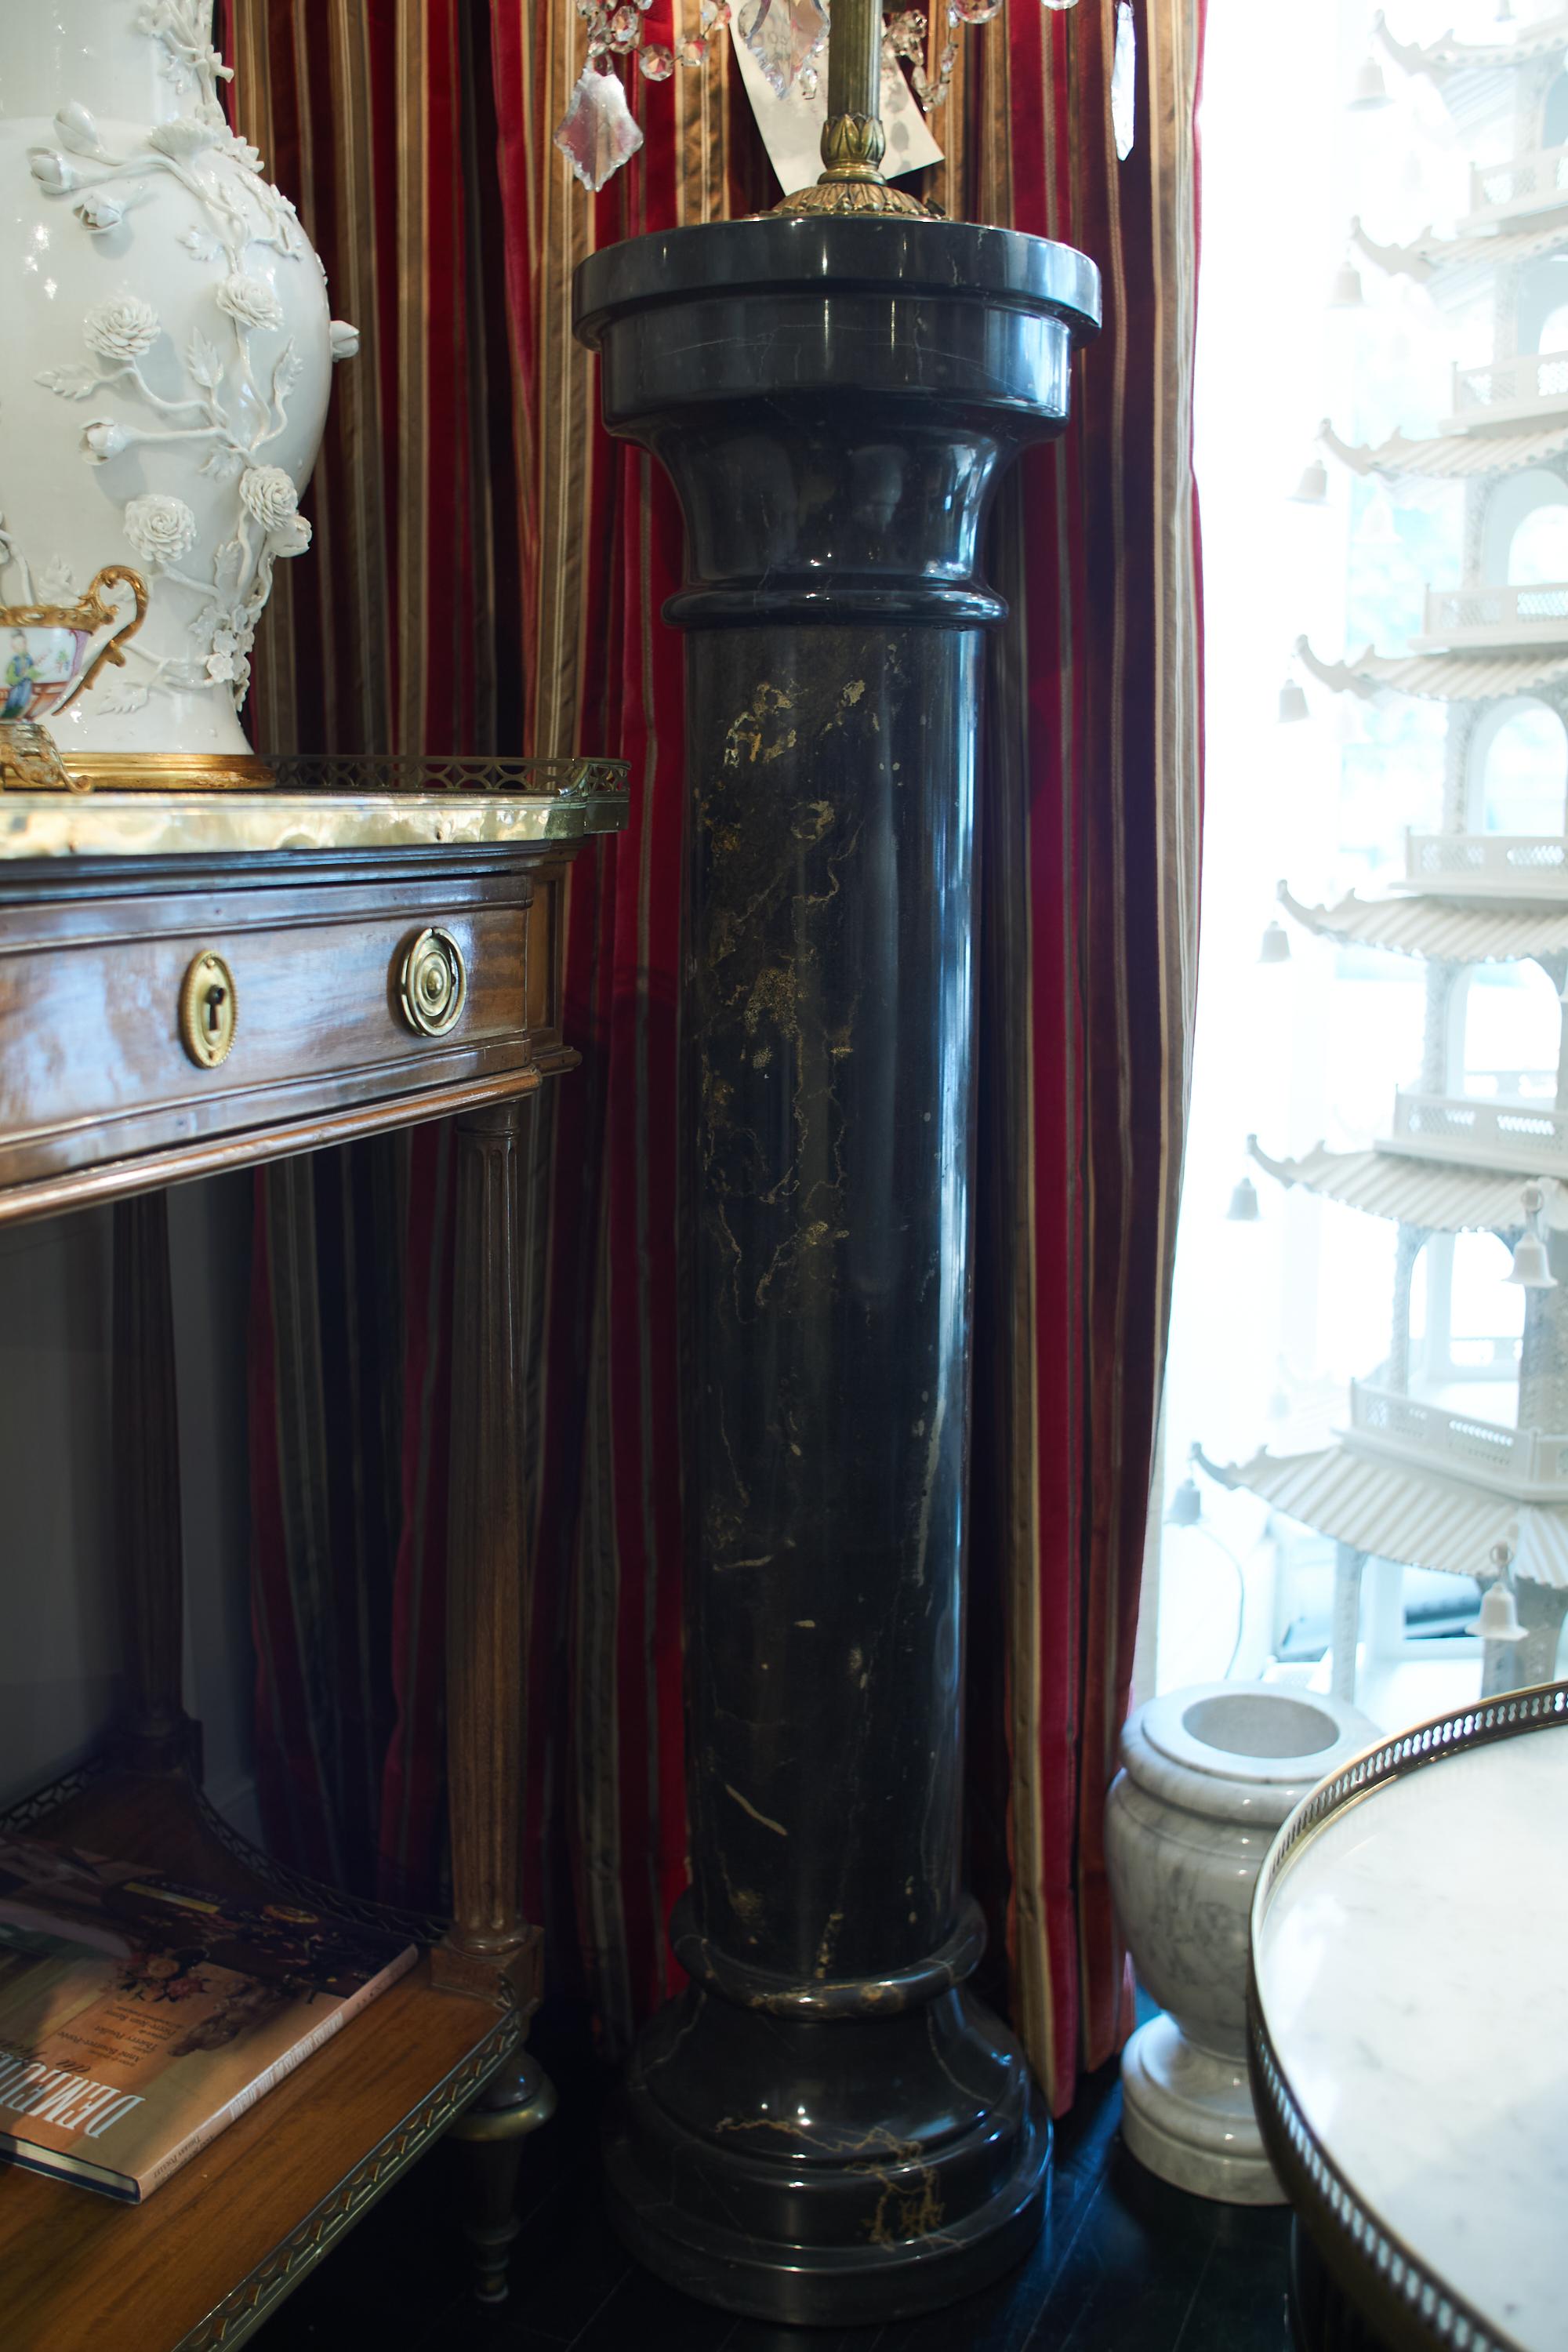 Colonne française en marbre noir.
Pour un intérieur chic, des lignes classiques dans l'esprit Hollywood Regency.